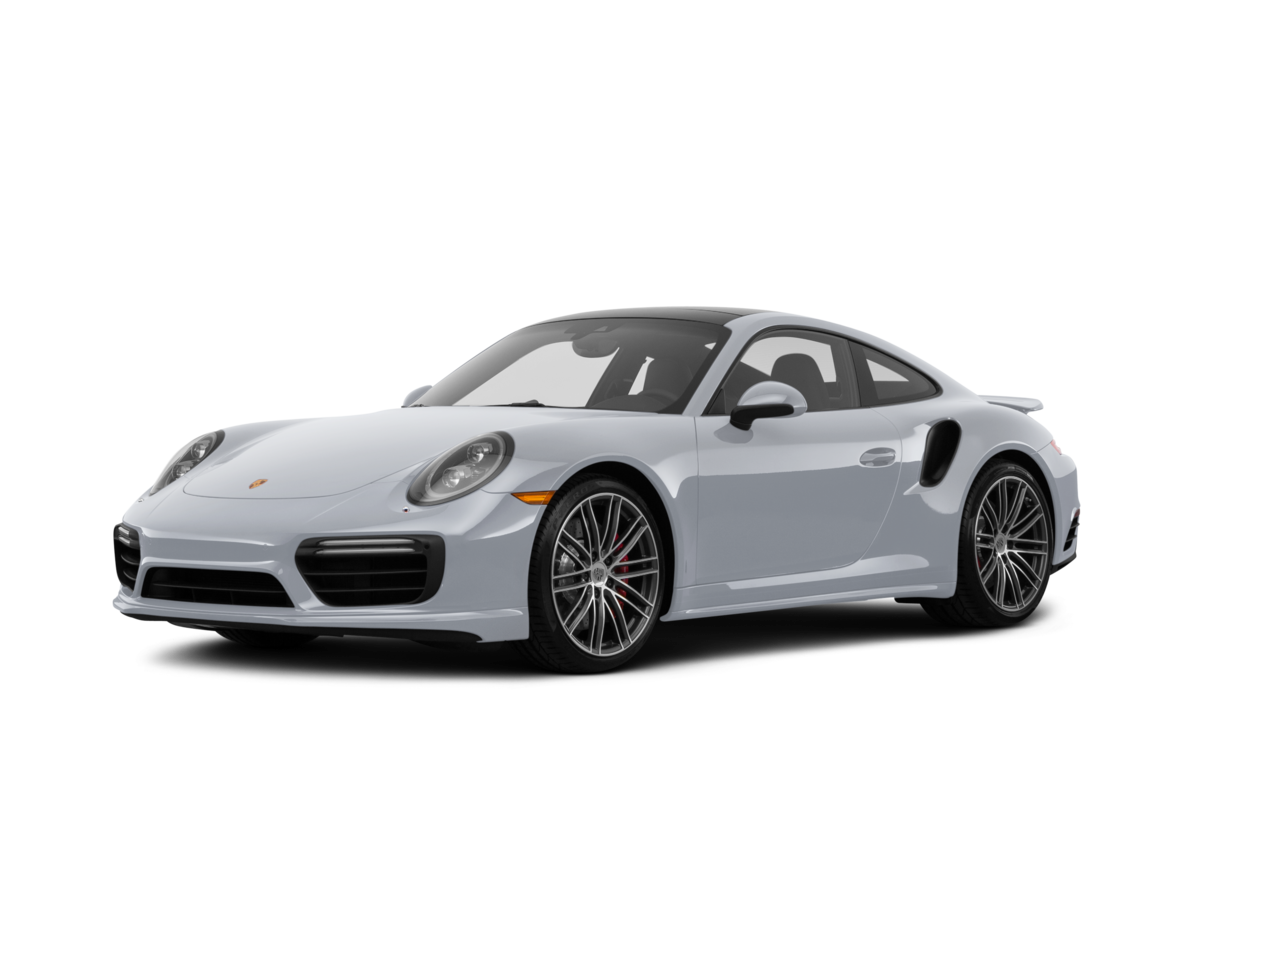 Porsche 911 Cabriolet Transparent File